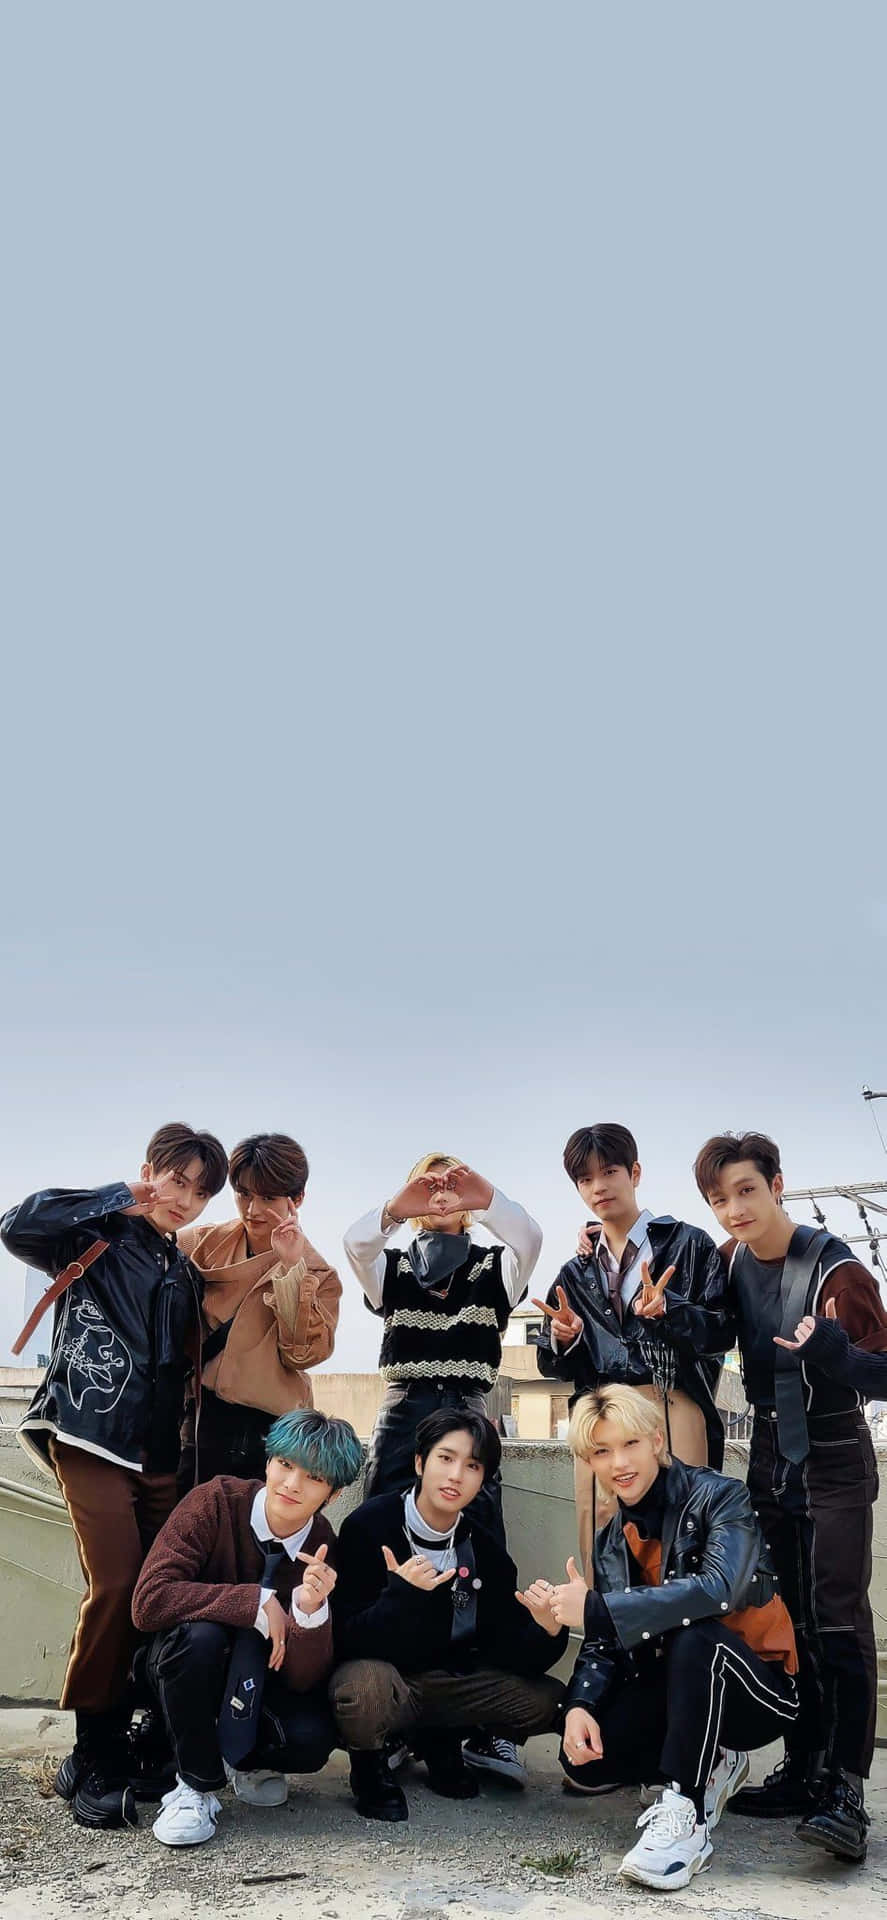 Medlemmerne af det sydkoreanske popsgruppe Stray Kids står i en pose inspireret af teknologi til deres 2020 promoveringsfotosession. Wallpaper